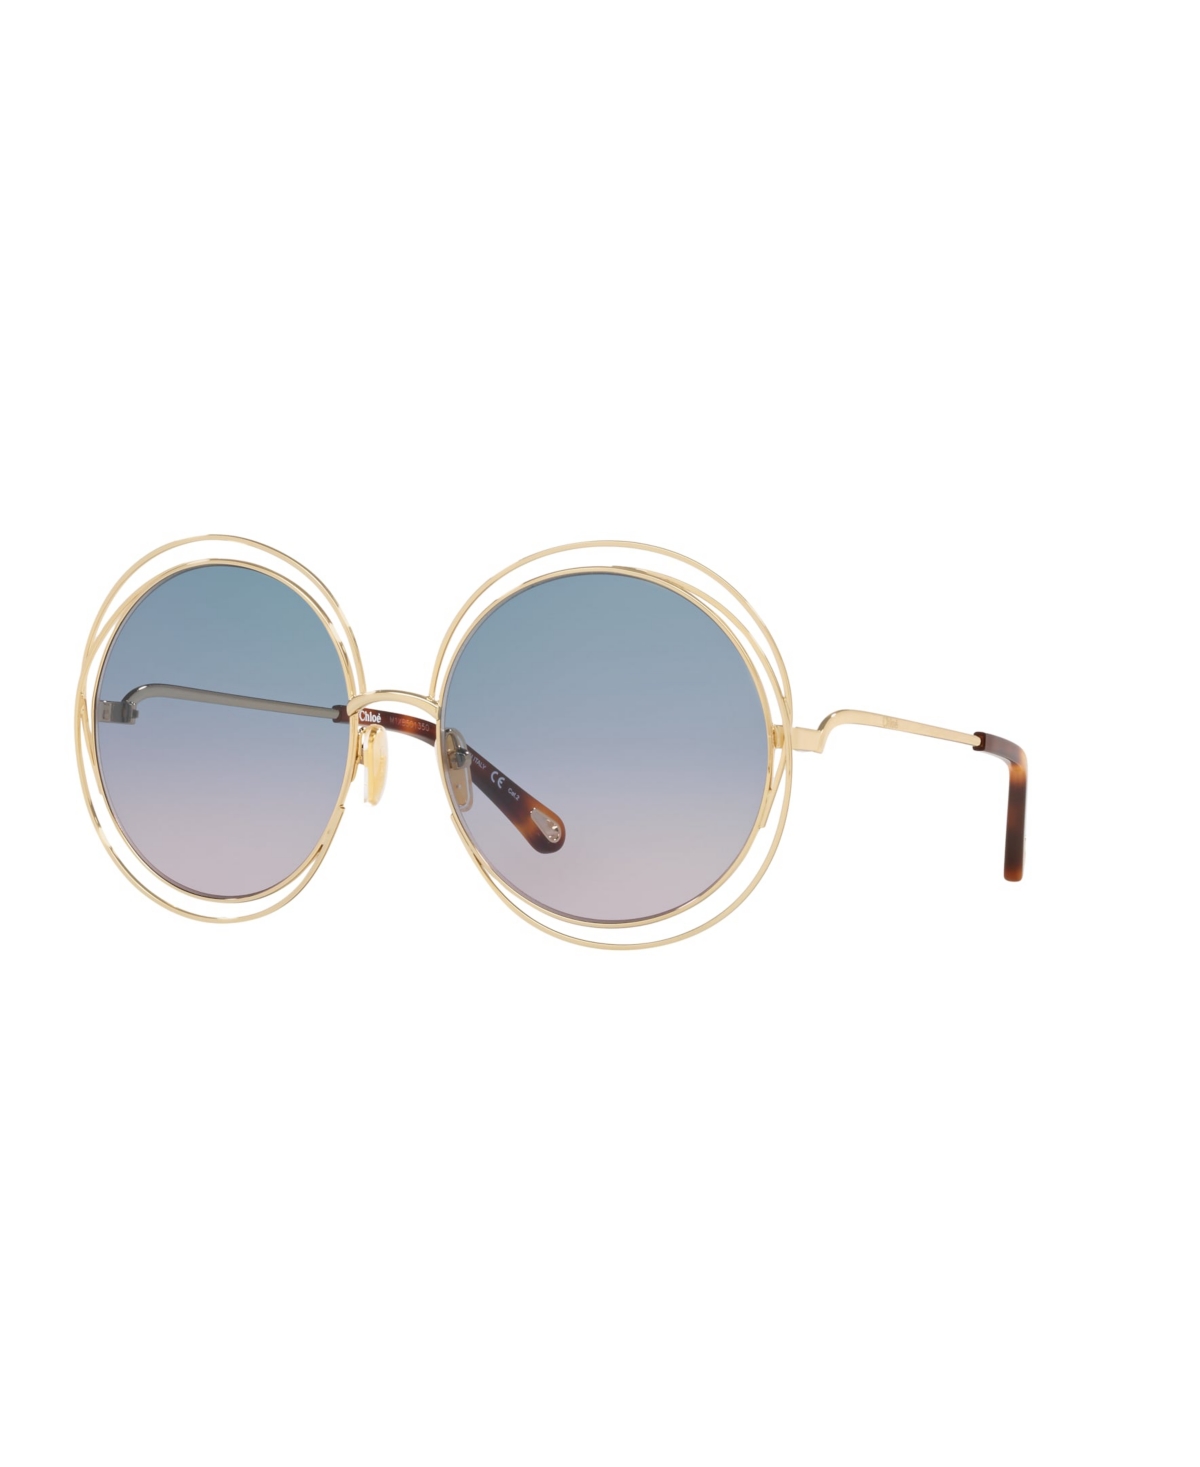 Chloé Unisex Sunglasses, Ch0045s In Blue Grad